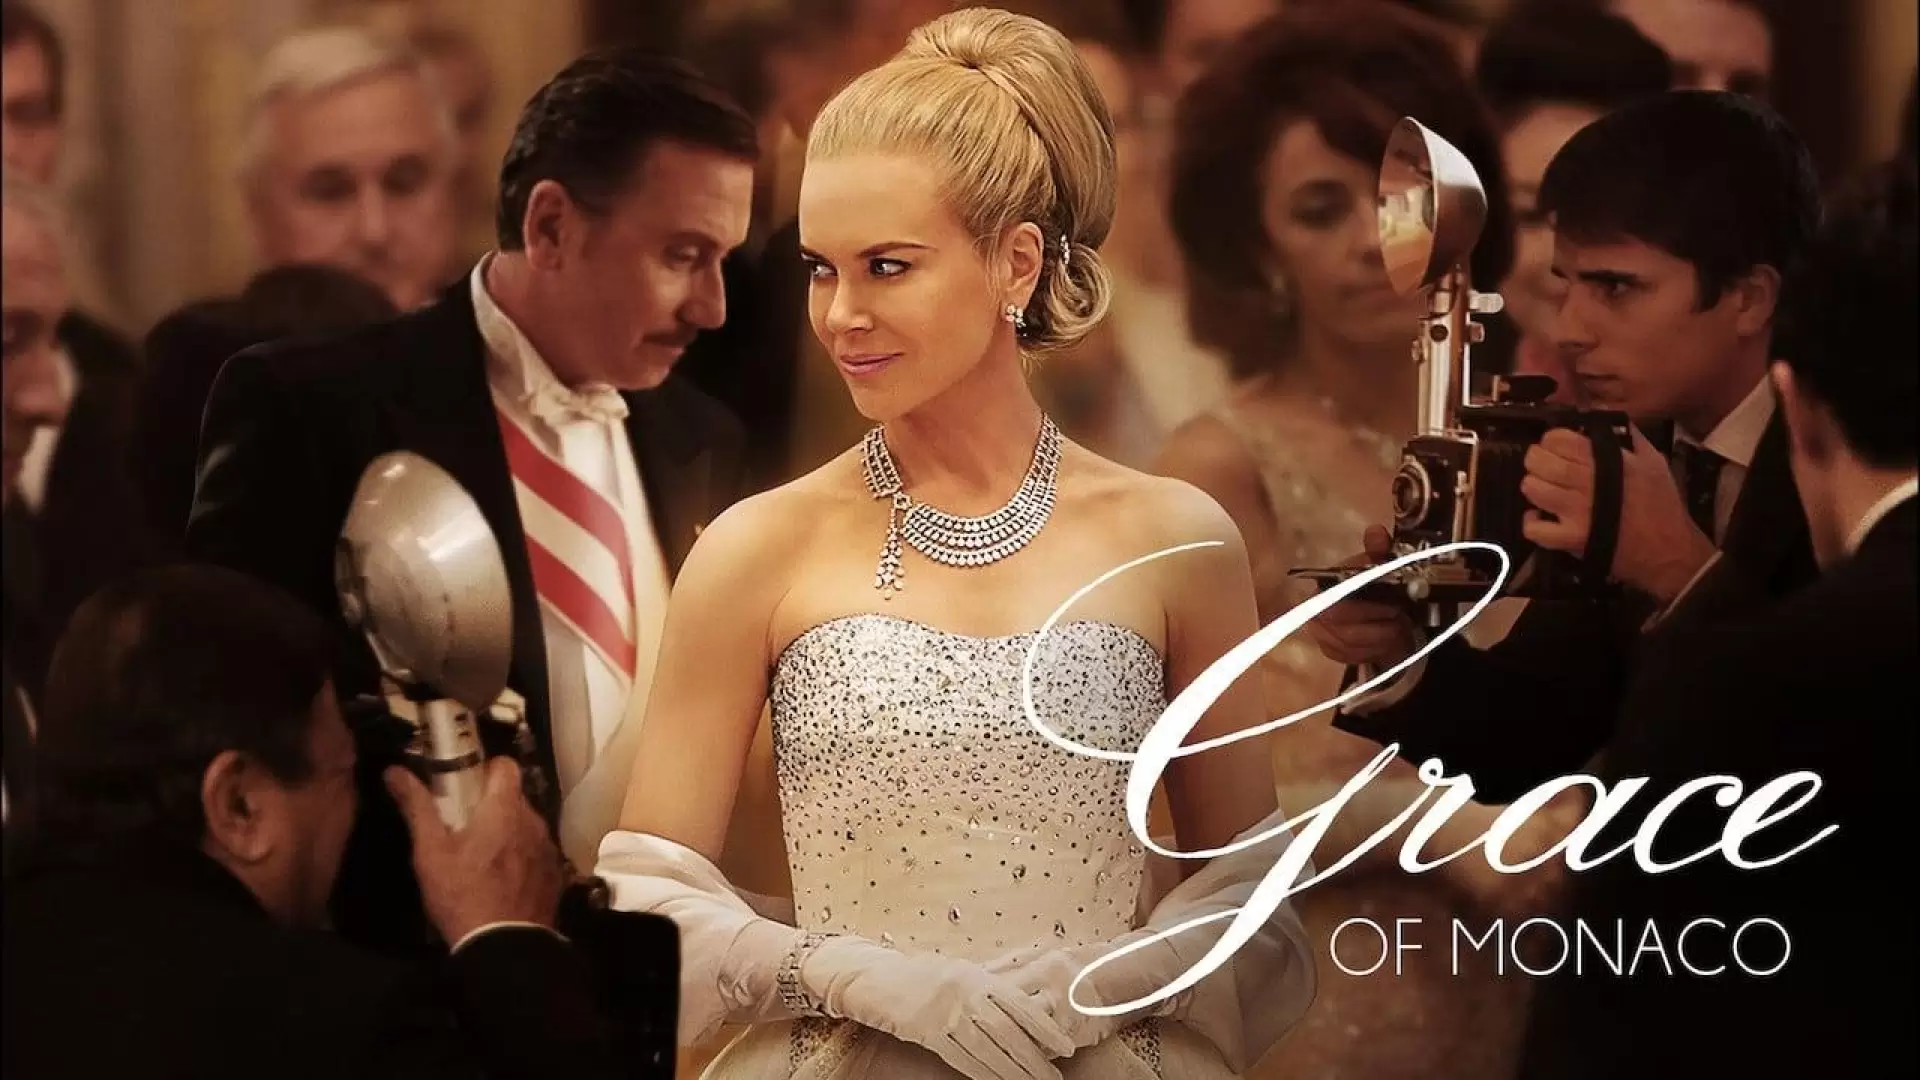 دانلود فیلم Grace of Monaco 2014 (گریس از موناکو) با زیرنویس فارسی و تماشای آنلاین